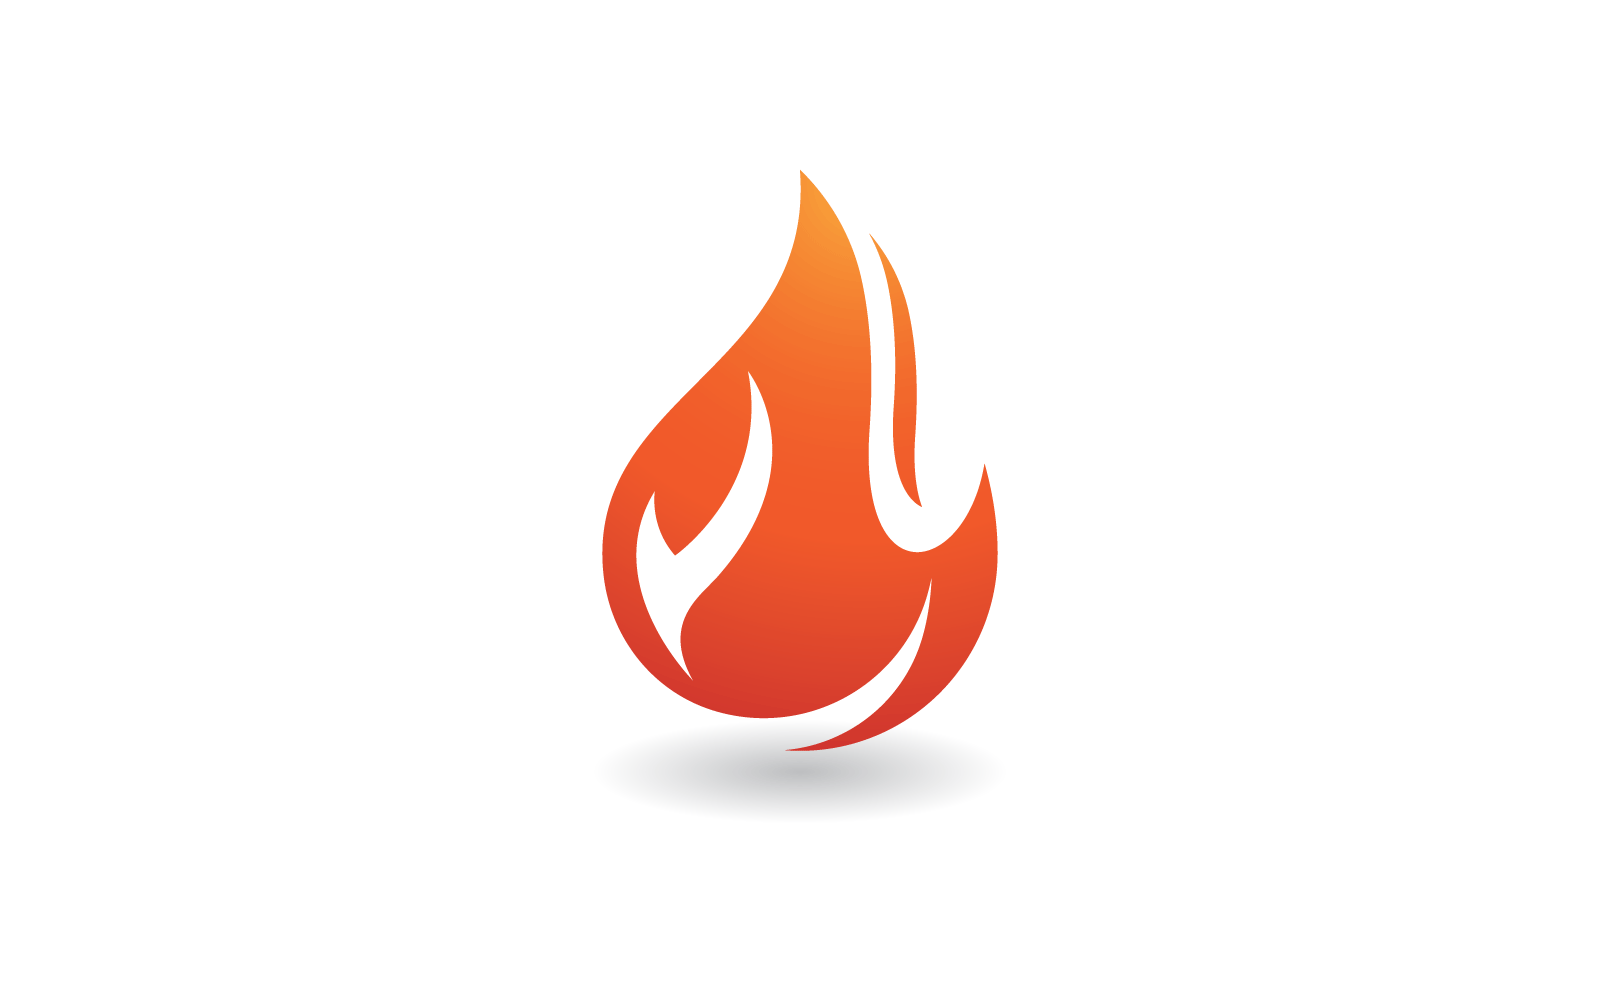 Fire flame design illustration logo vector